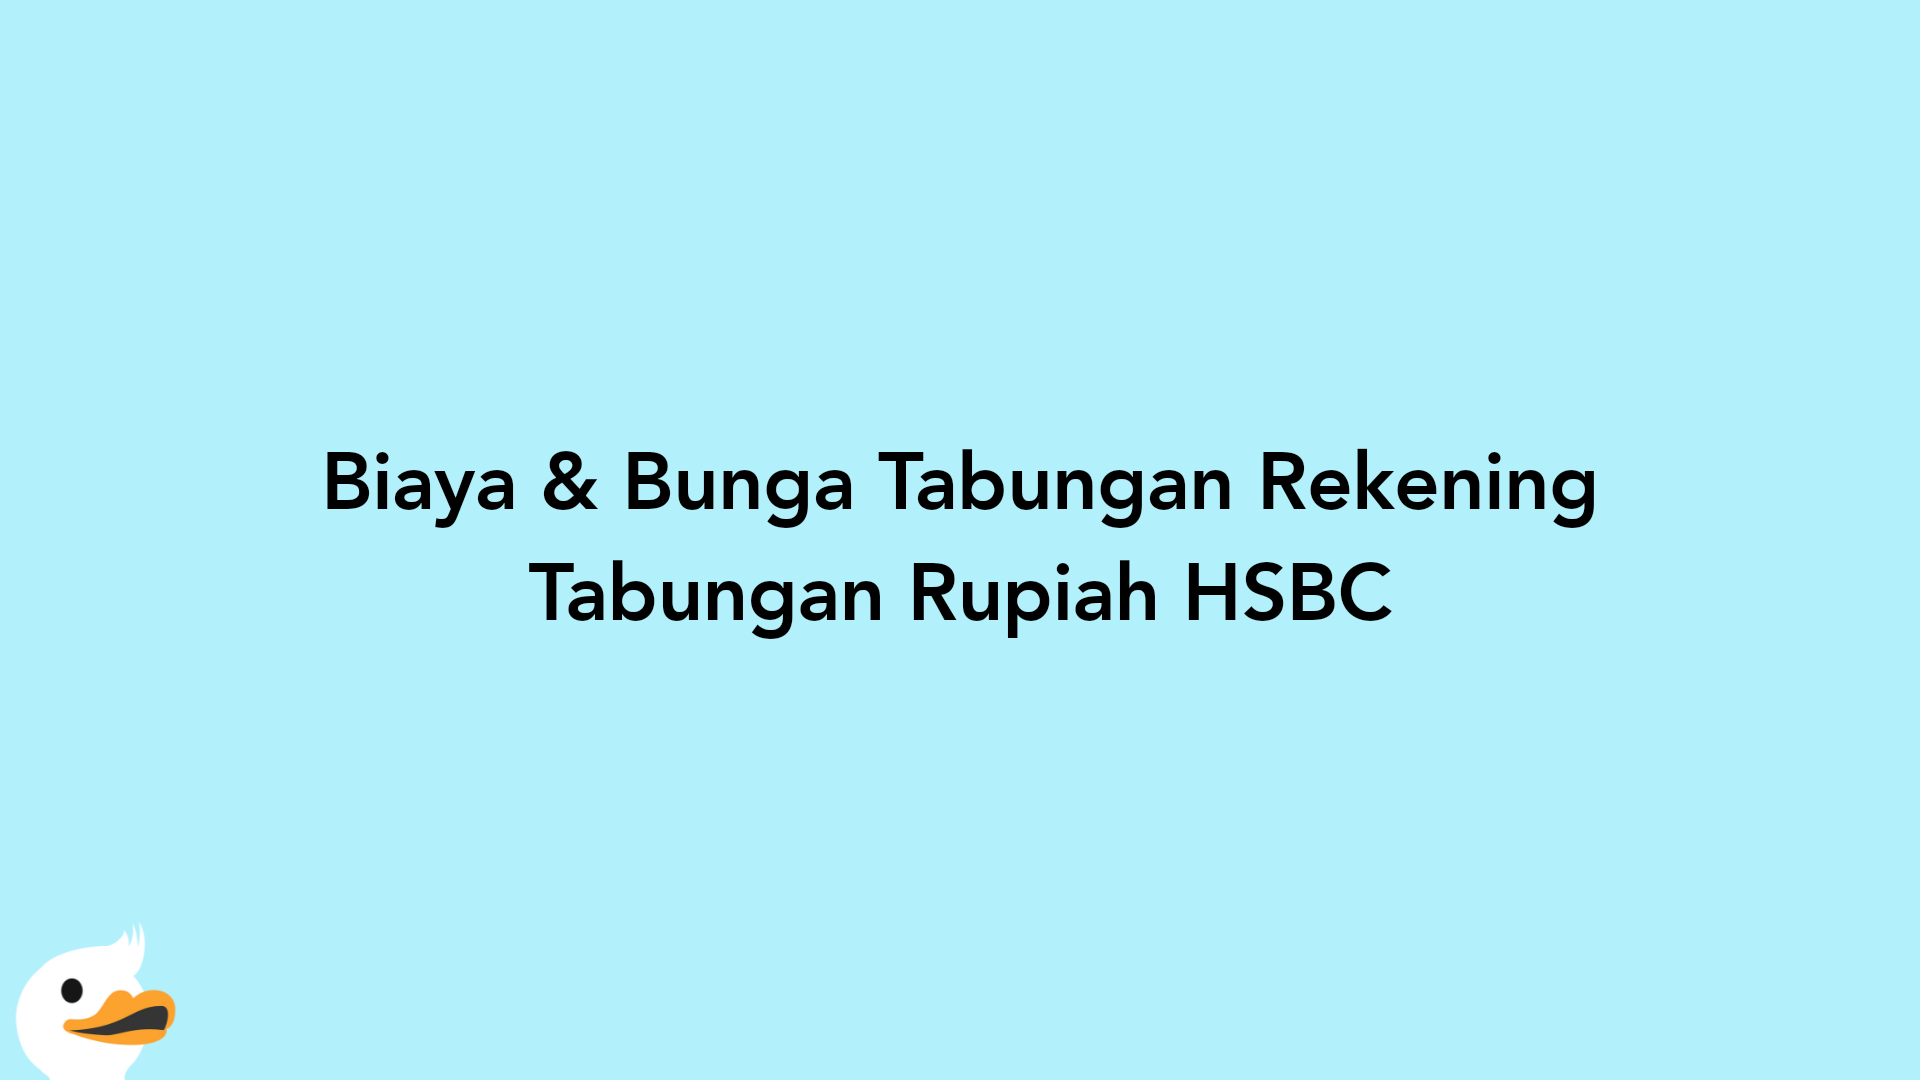 Biaya & Bunga Tabungan Rekening Tabungan Rupiah HSBC